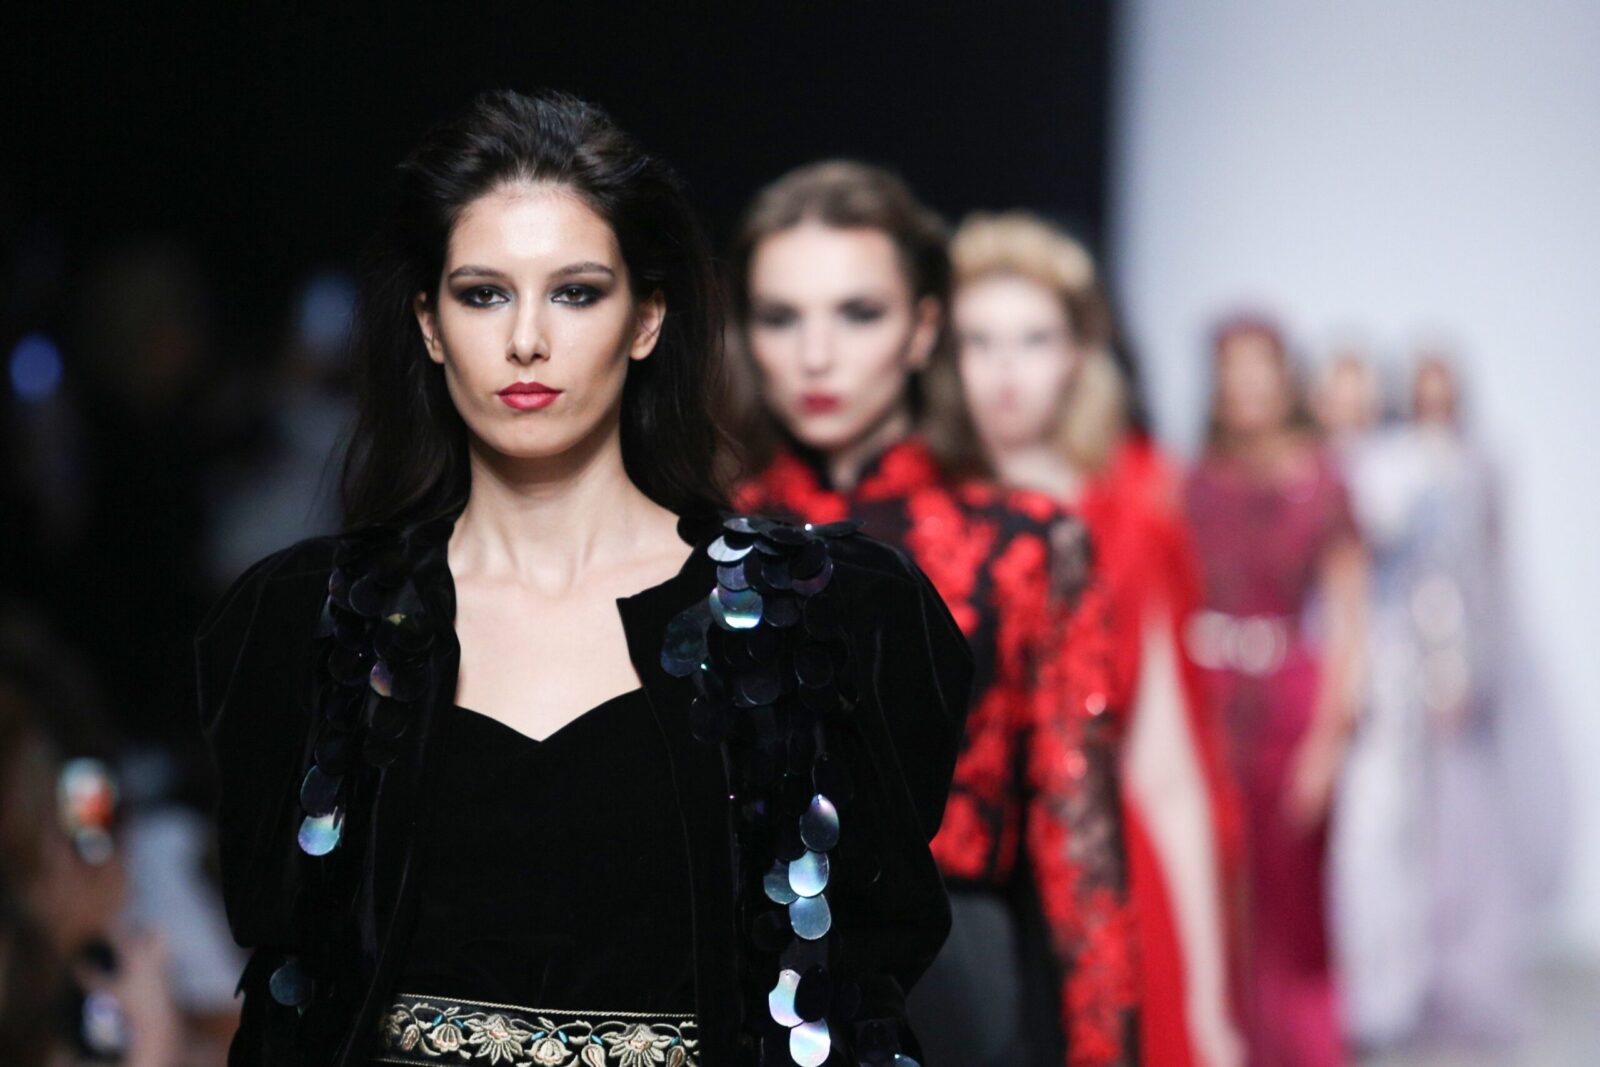 Анна Попова о моде в 2020 году: «Нужно создавать свой персональный стиль»